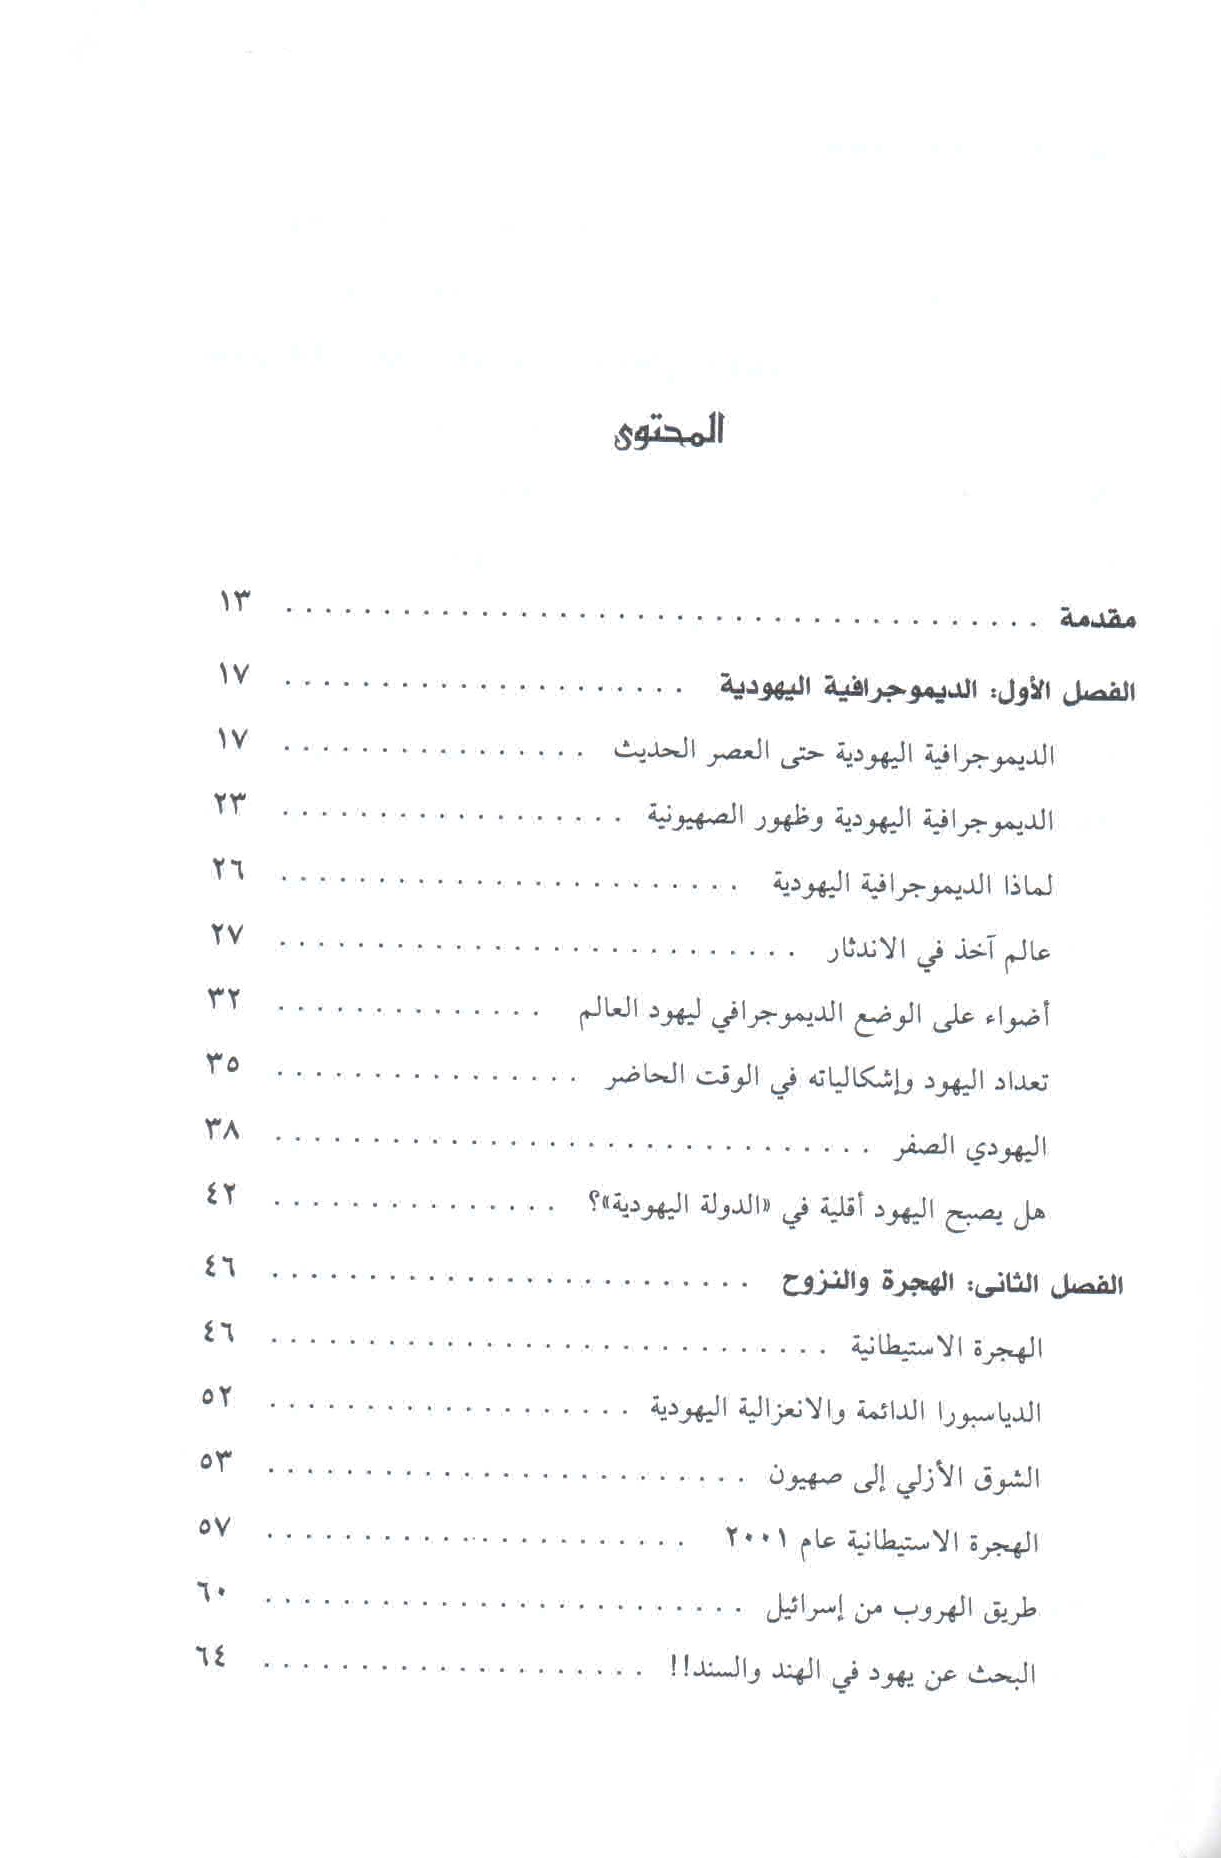 قائمة محتويات كتاب الصهيونية وخيوط العنكبوت ص. 5.